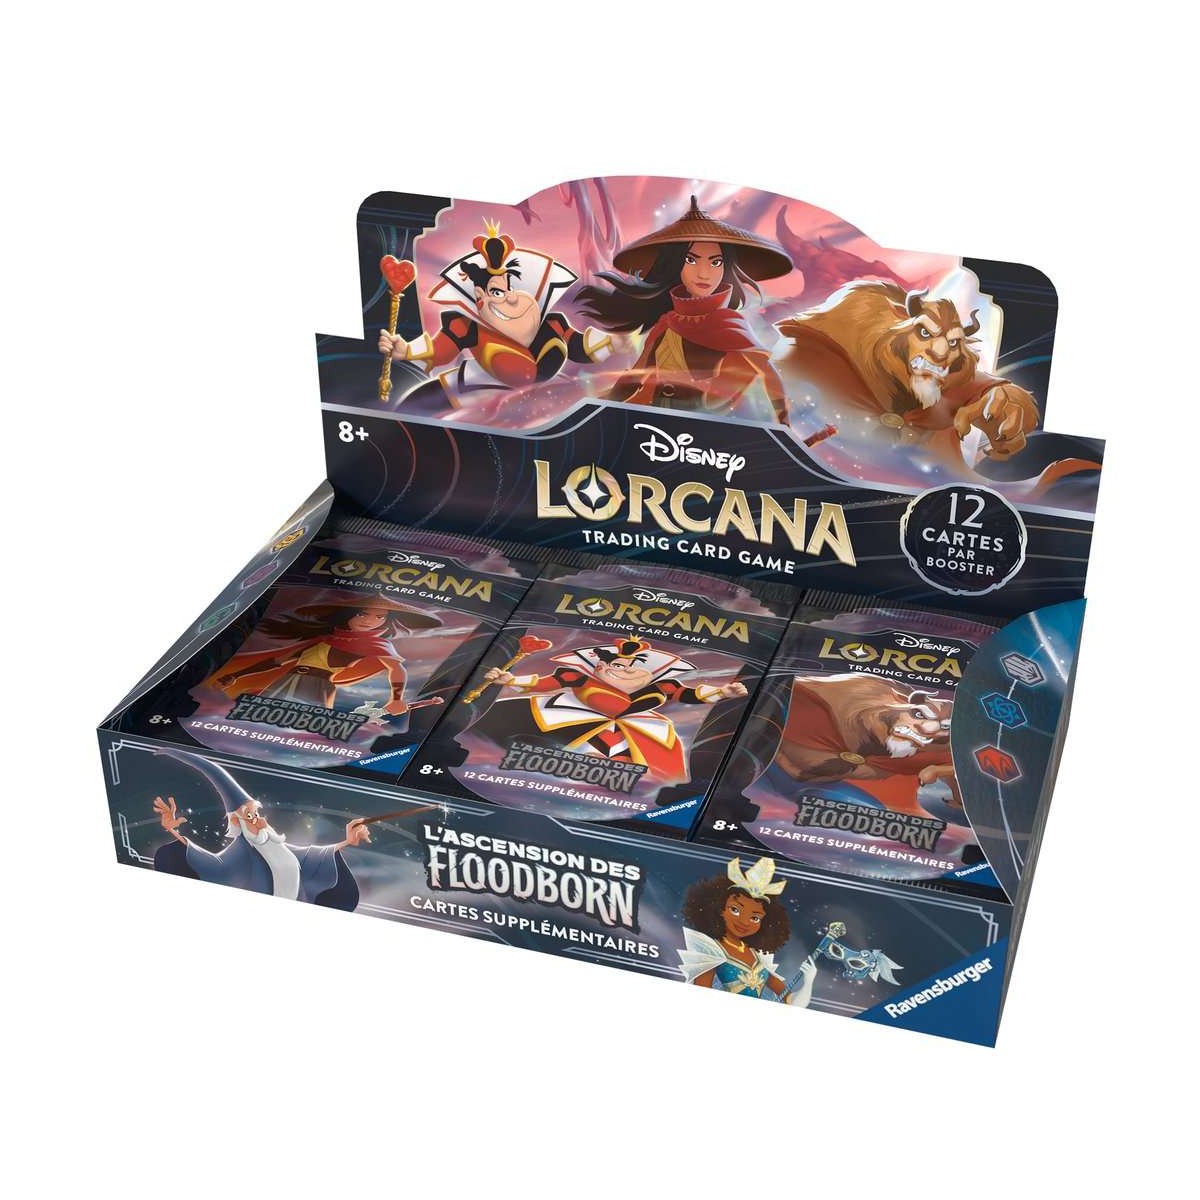 Lorcana - Le retour d'Ursula - Boite de 24 boosters